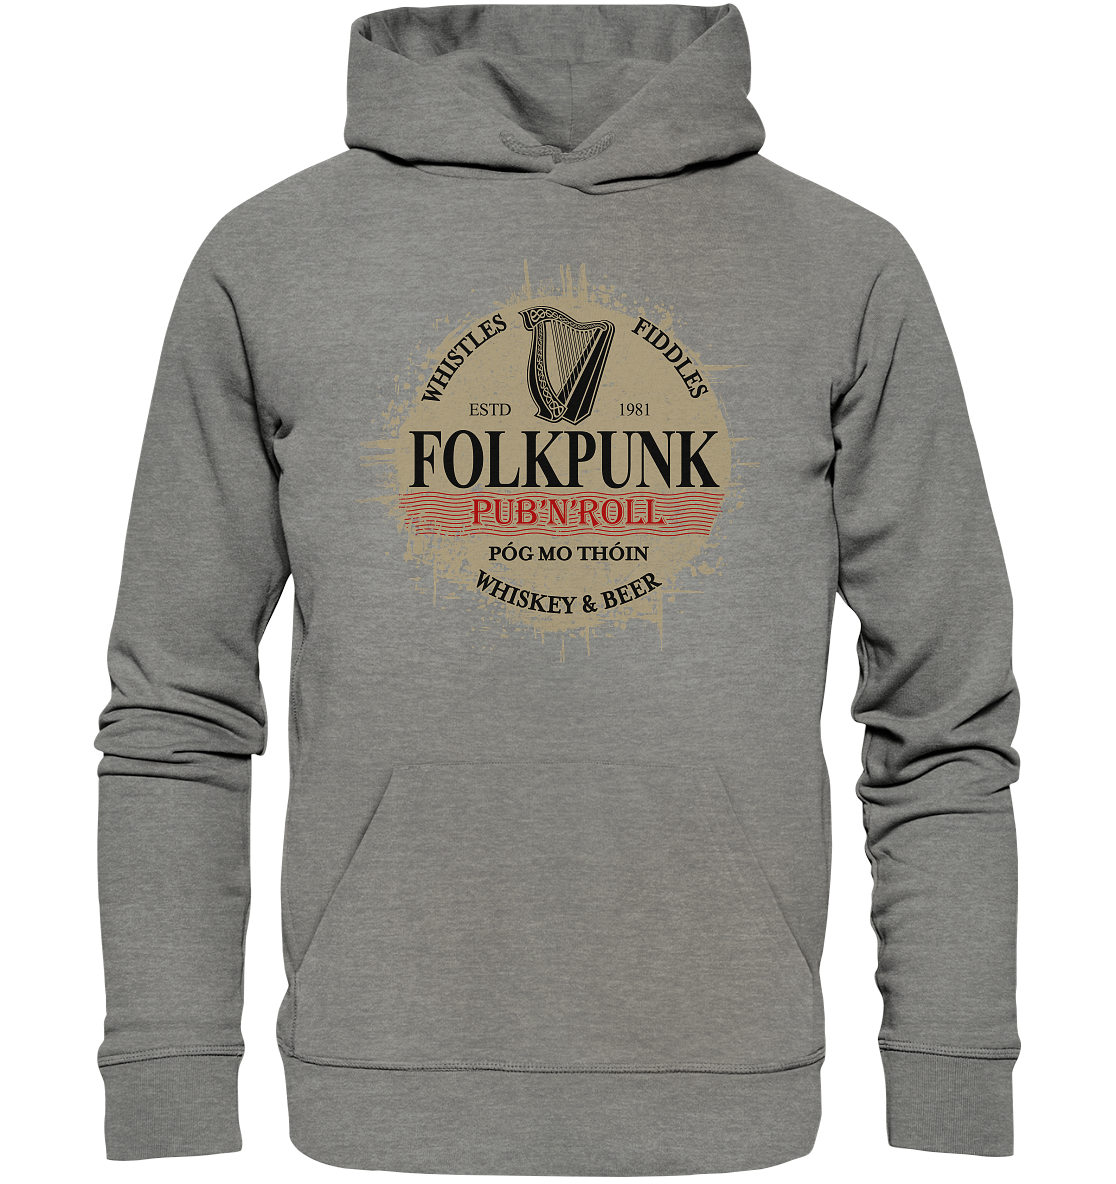 Folkpunk "Pub'n'Roll" - Organic Hoodie